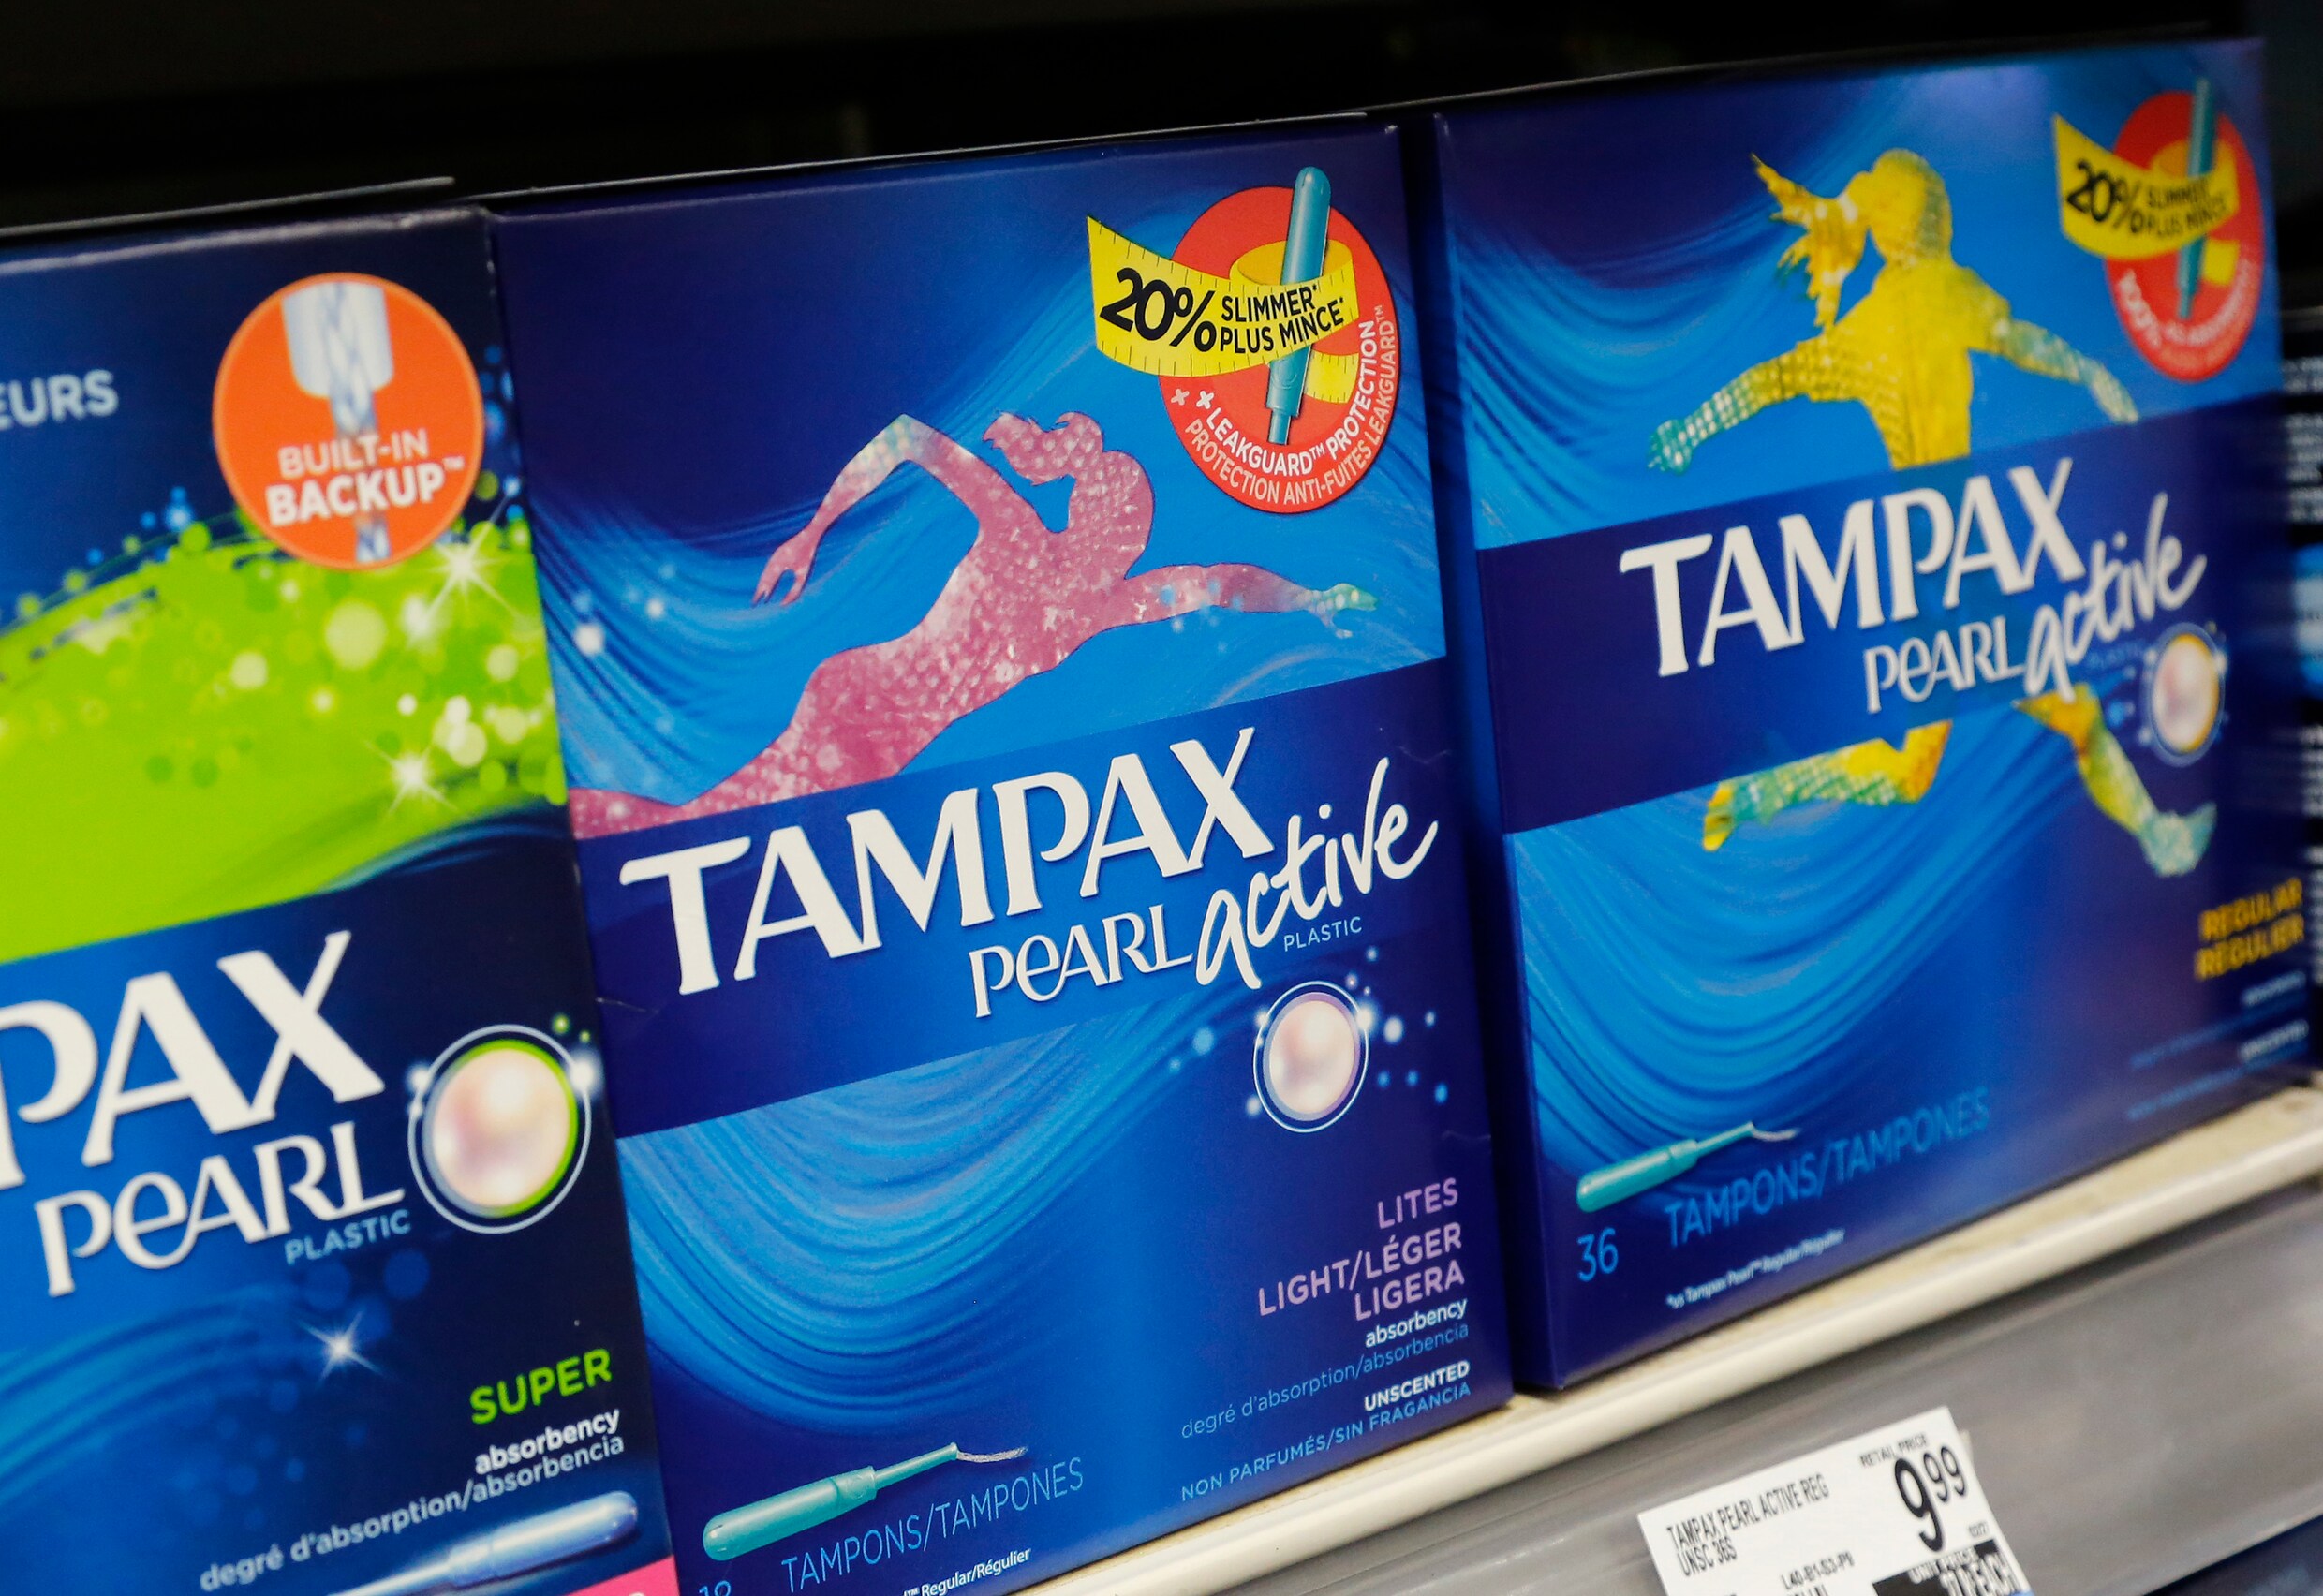 Menstruatie-armoe in het VK: één op de tien meisjes heeft geen geld om tampons te kopen